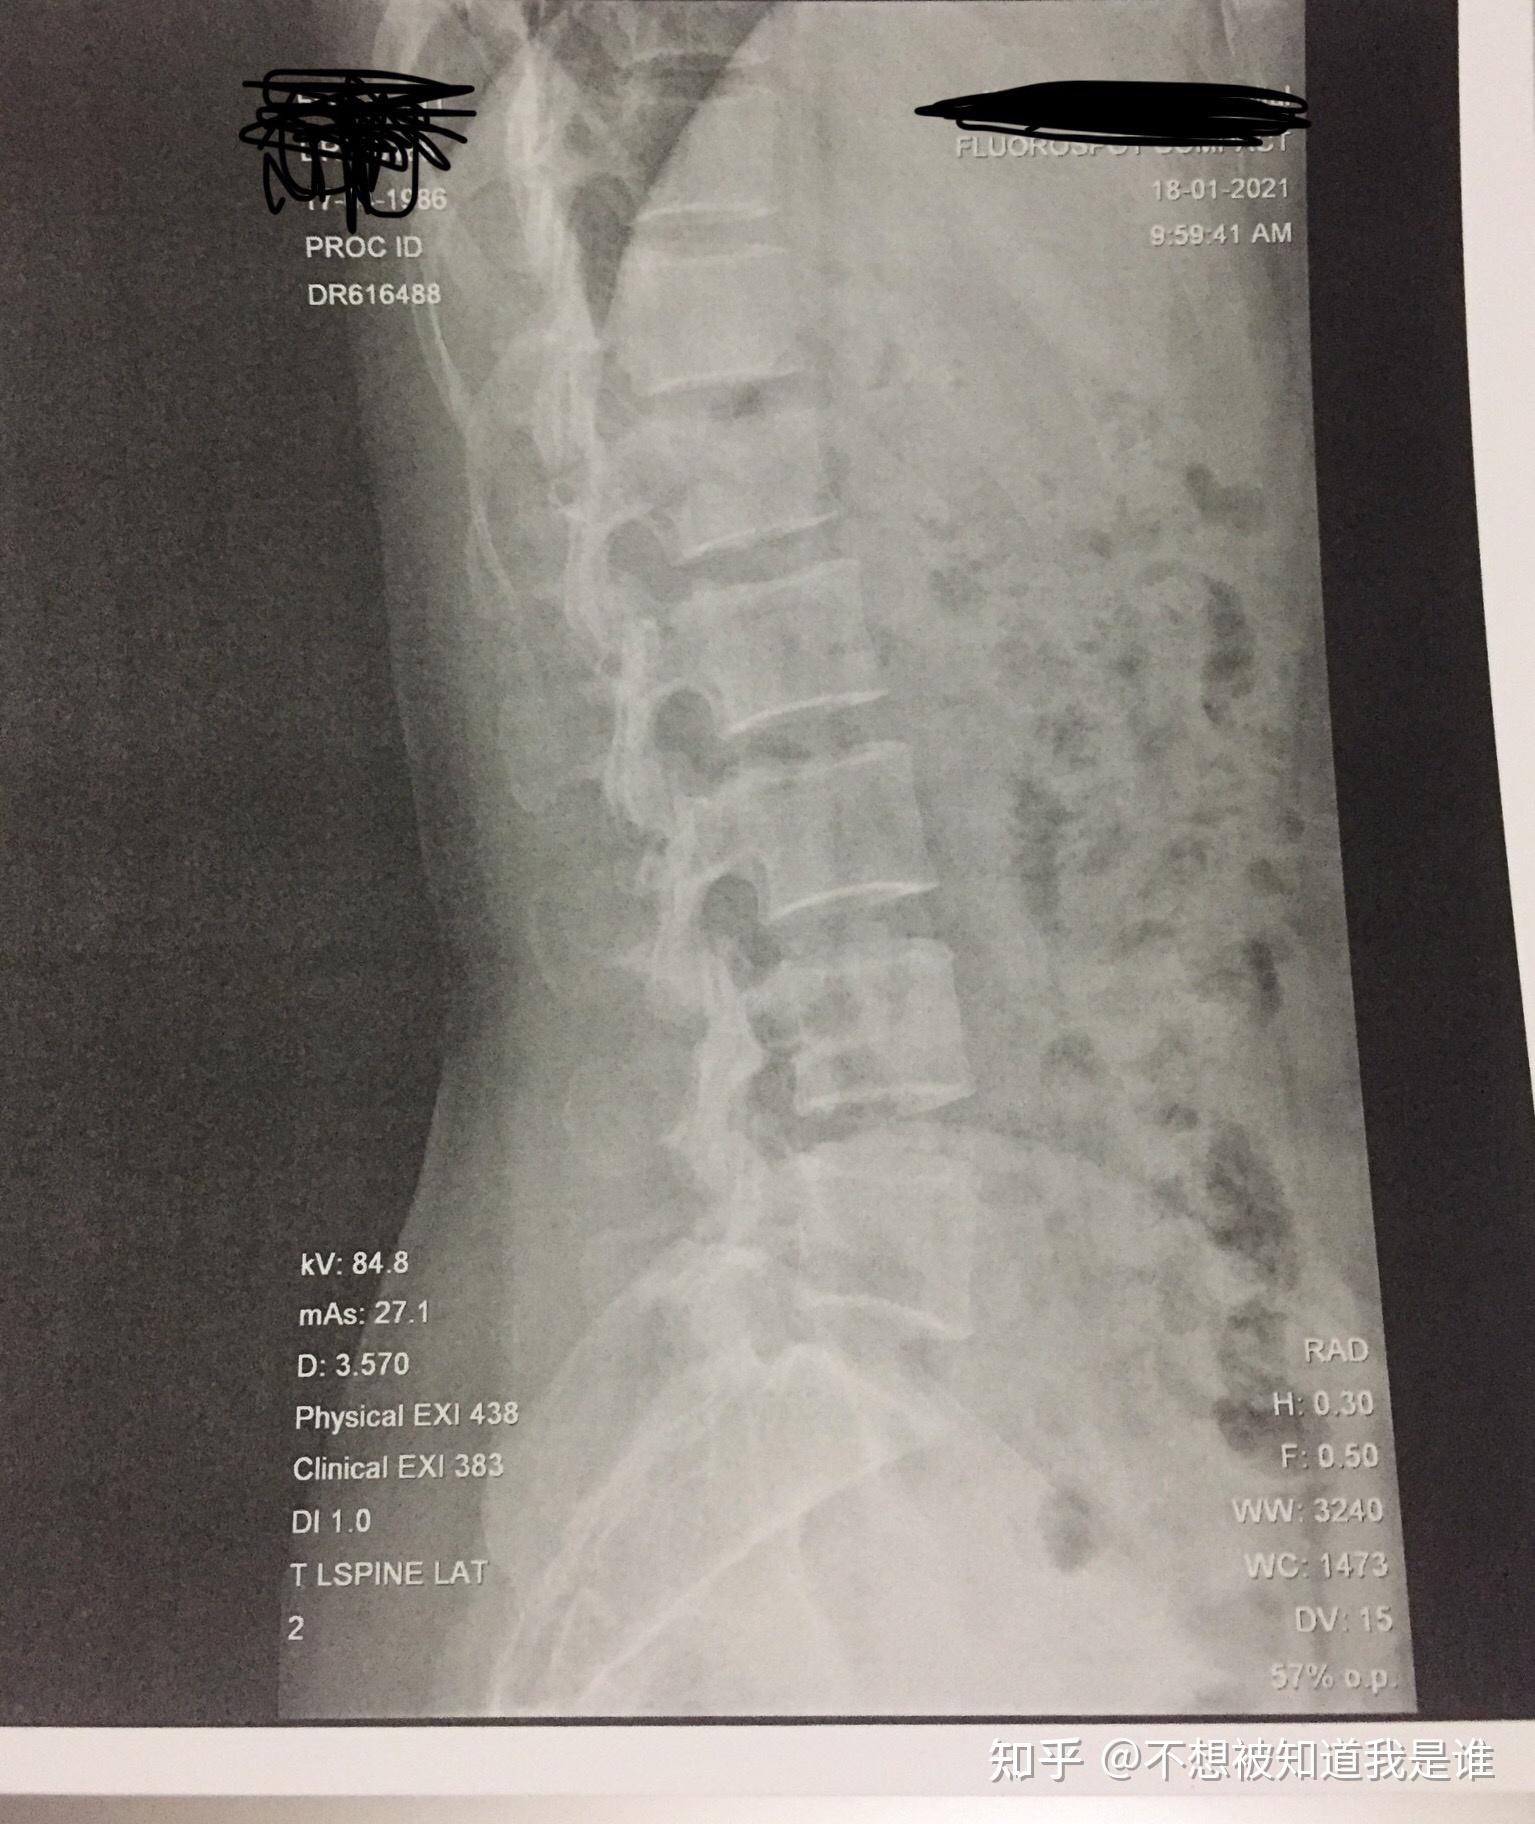 记录我(女,34岁)的腰椎l1压缩性骨折,尾椎骨折(保守治疗)整个恢复过程